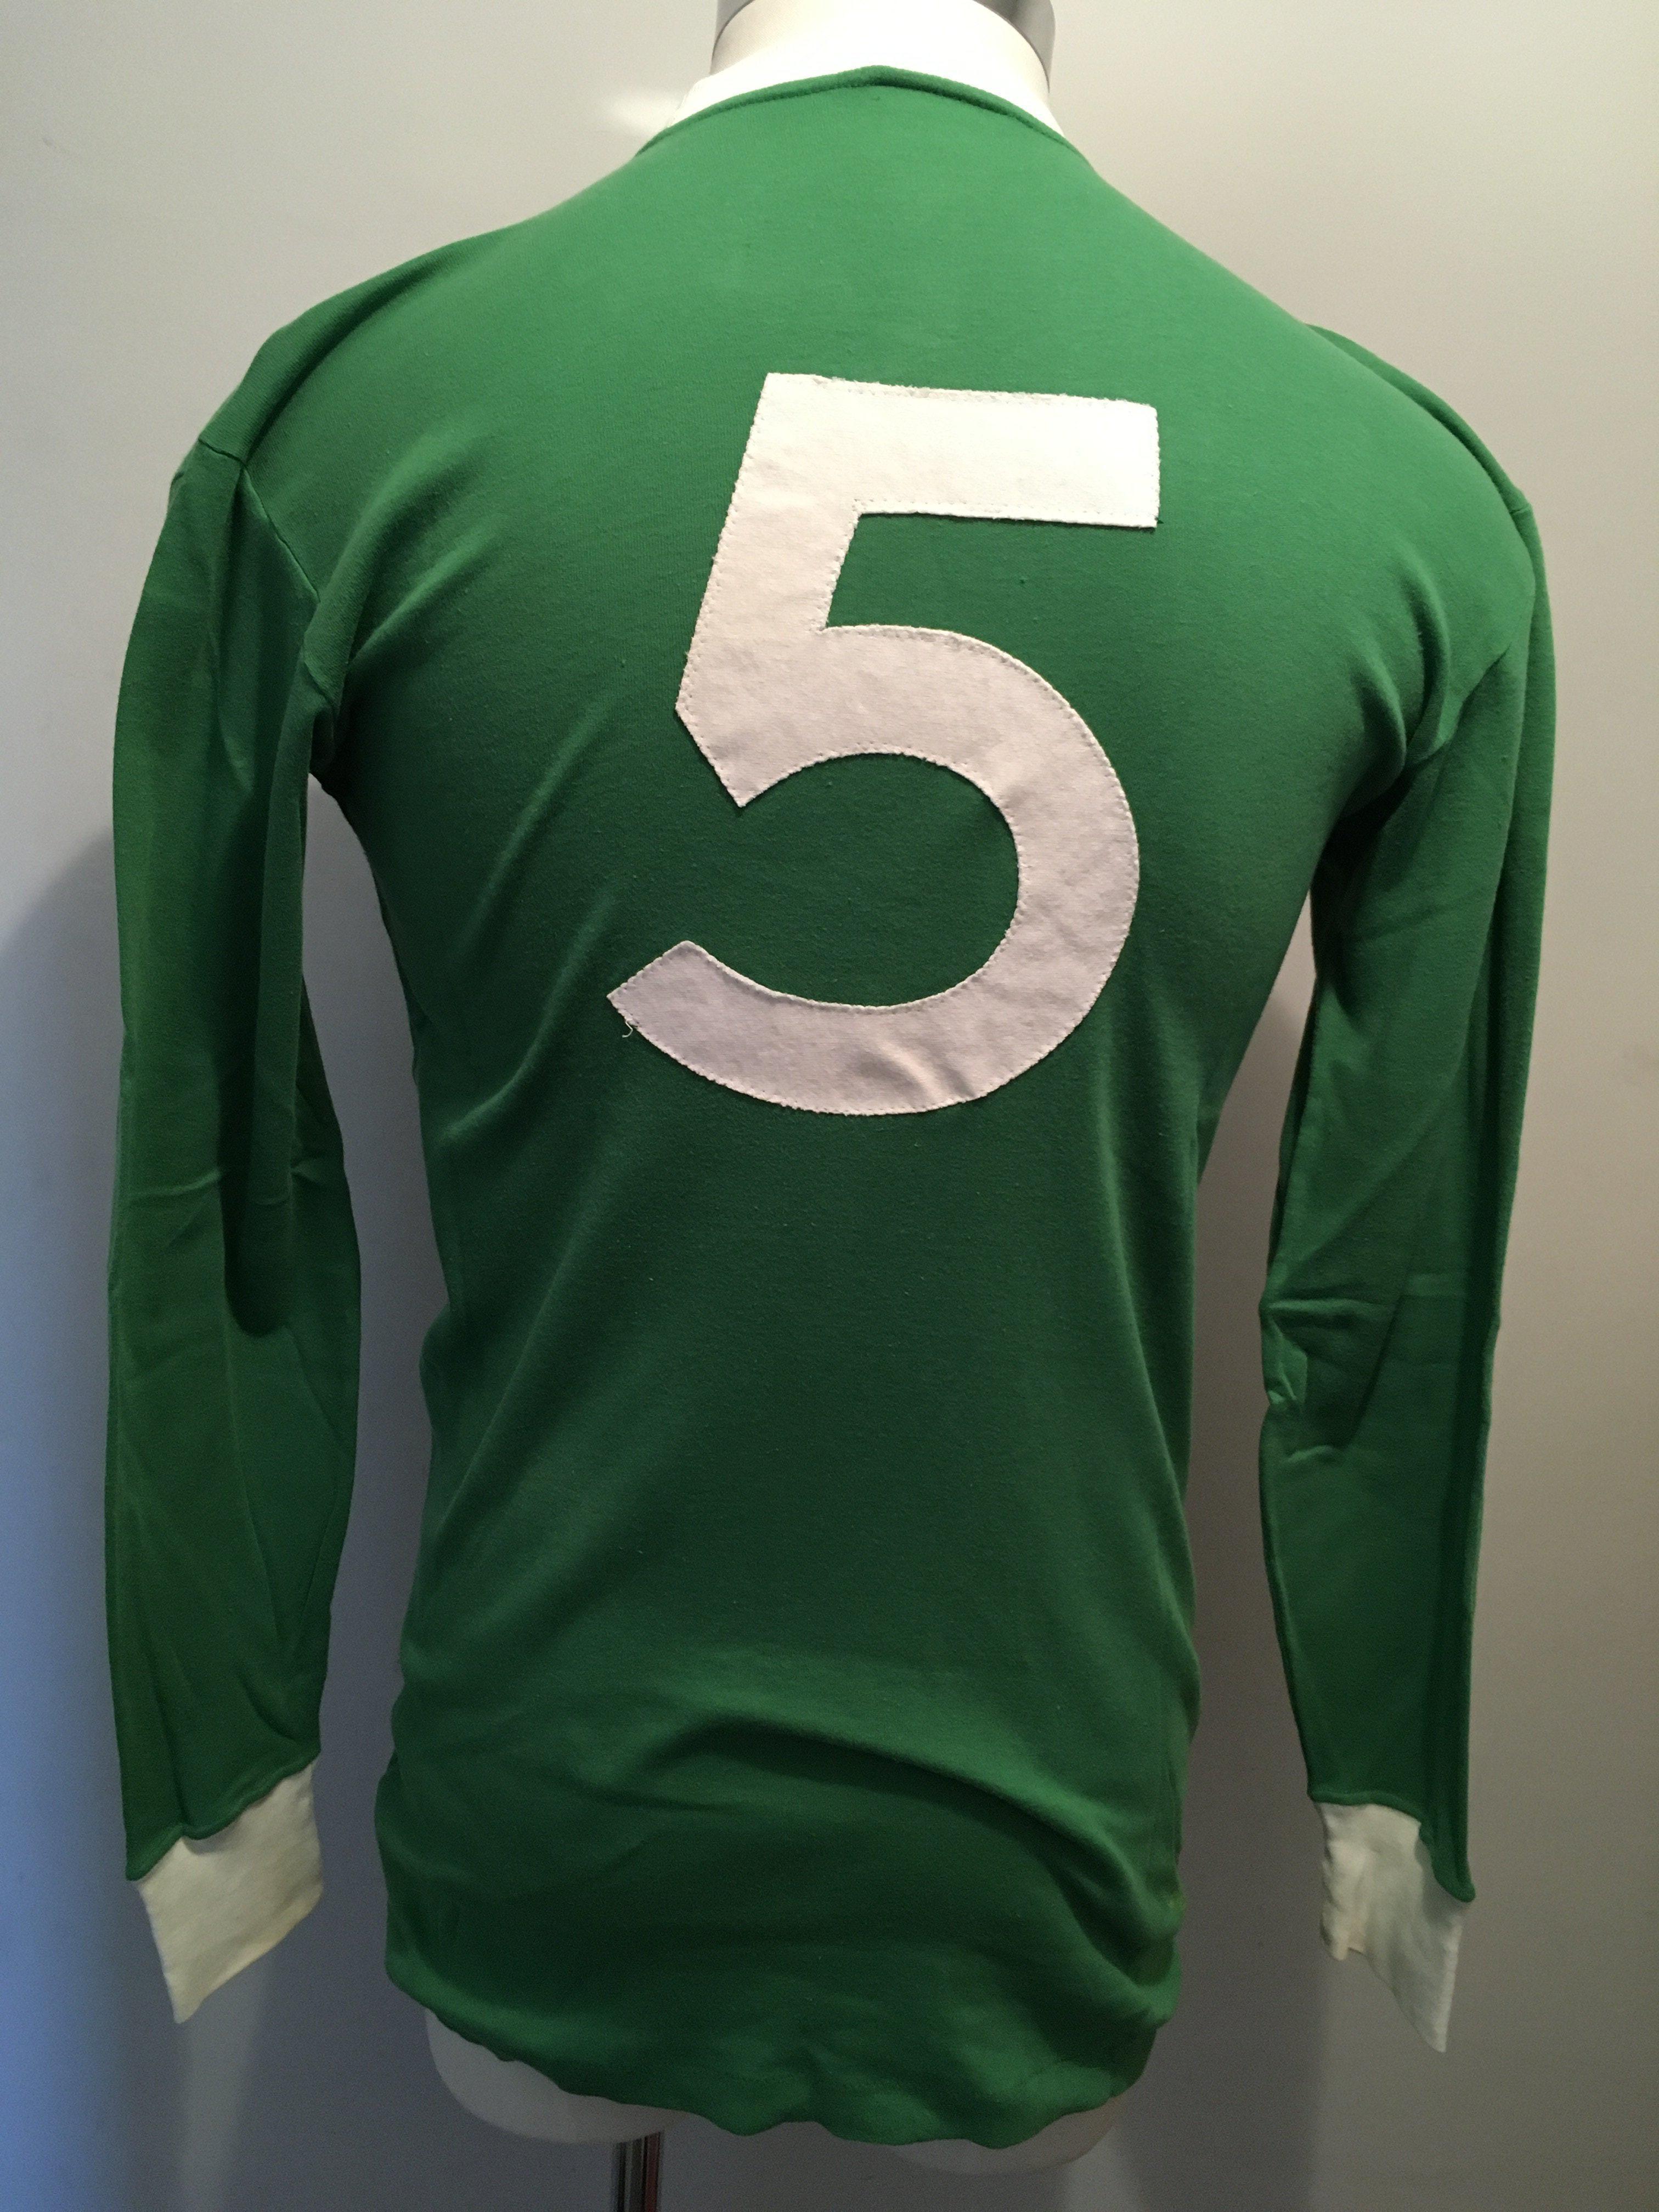 Terry Neill Northern Ireland Match Worn Football Shirt: Superb condition green long sleeve shirt - Image 2 of 4